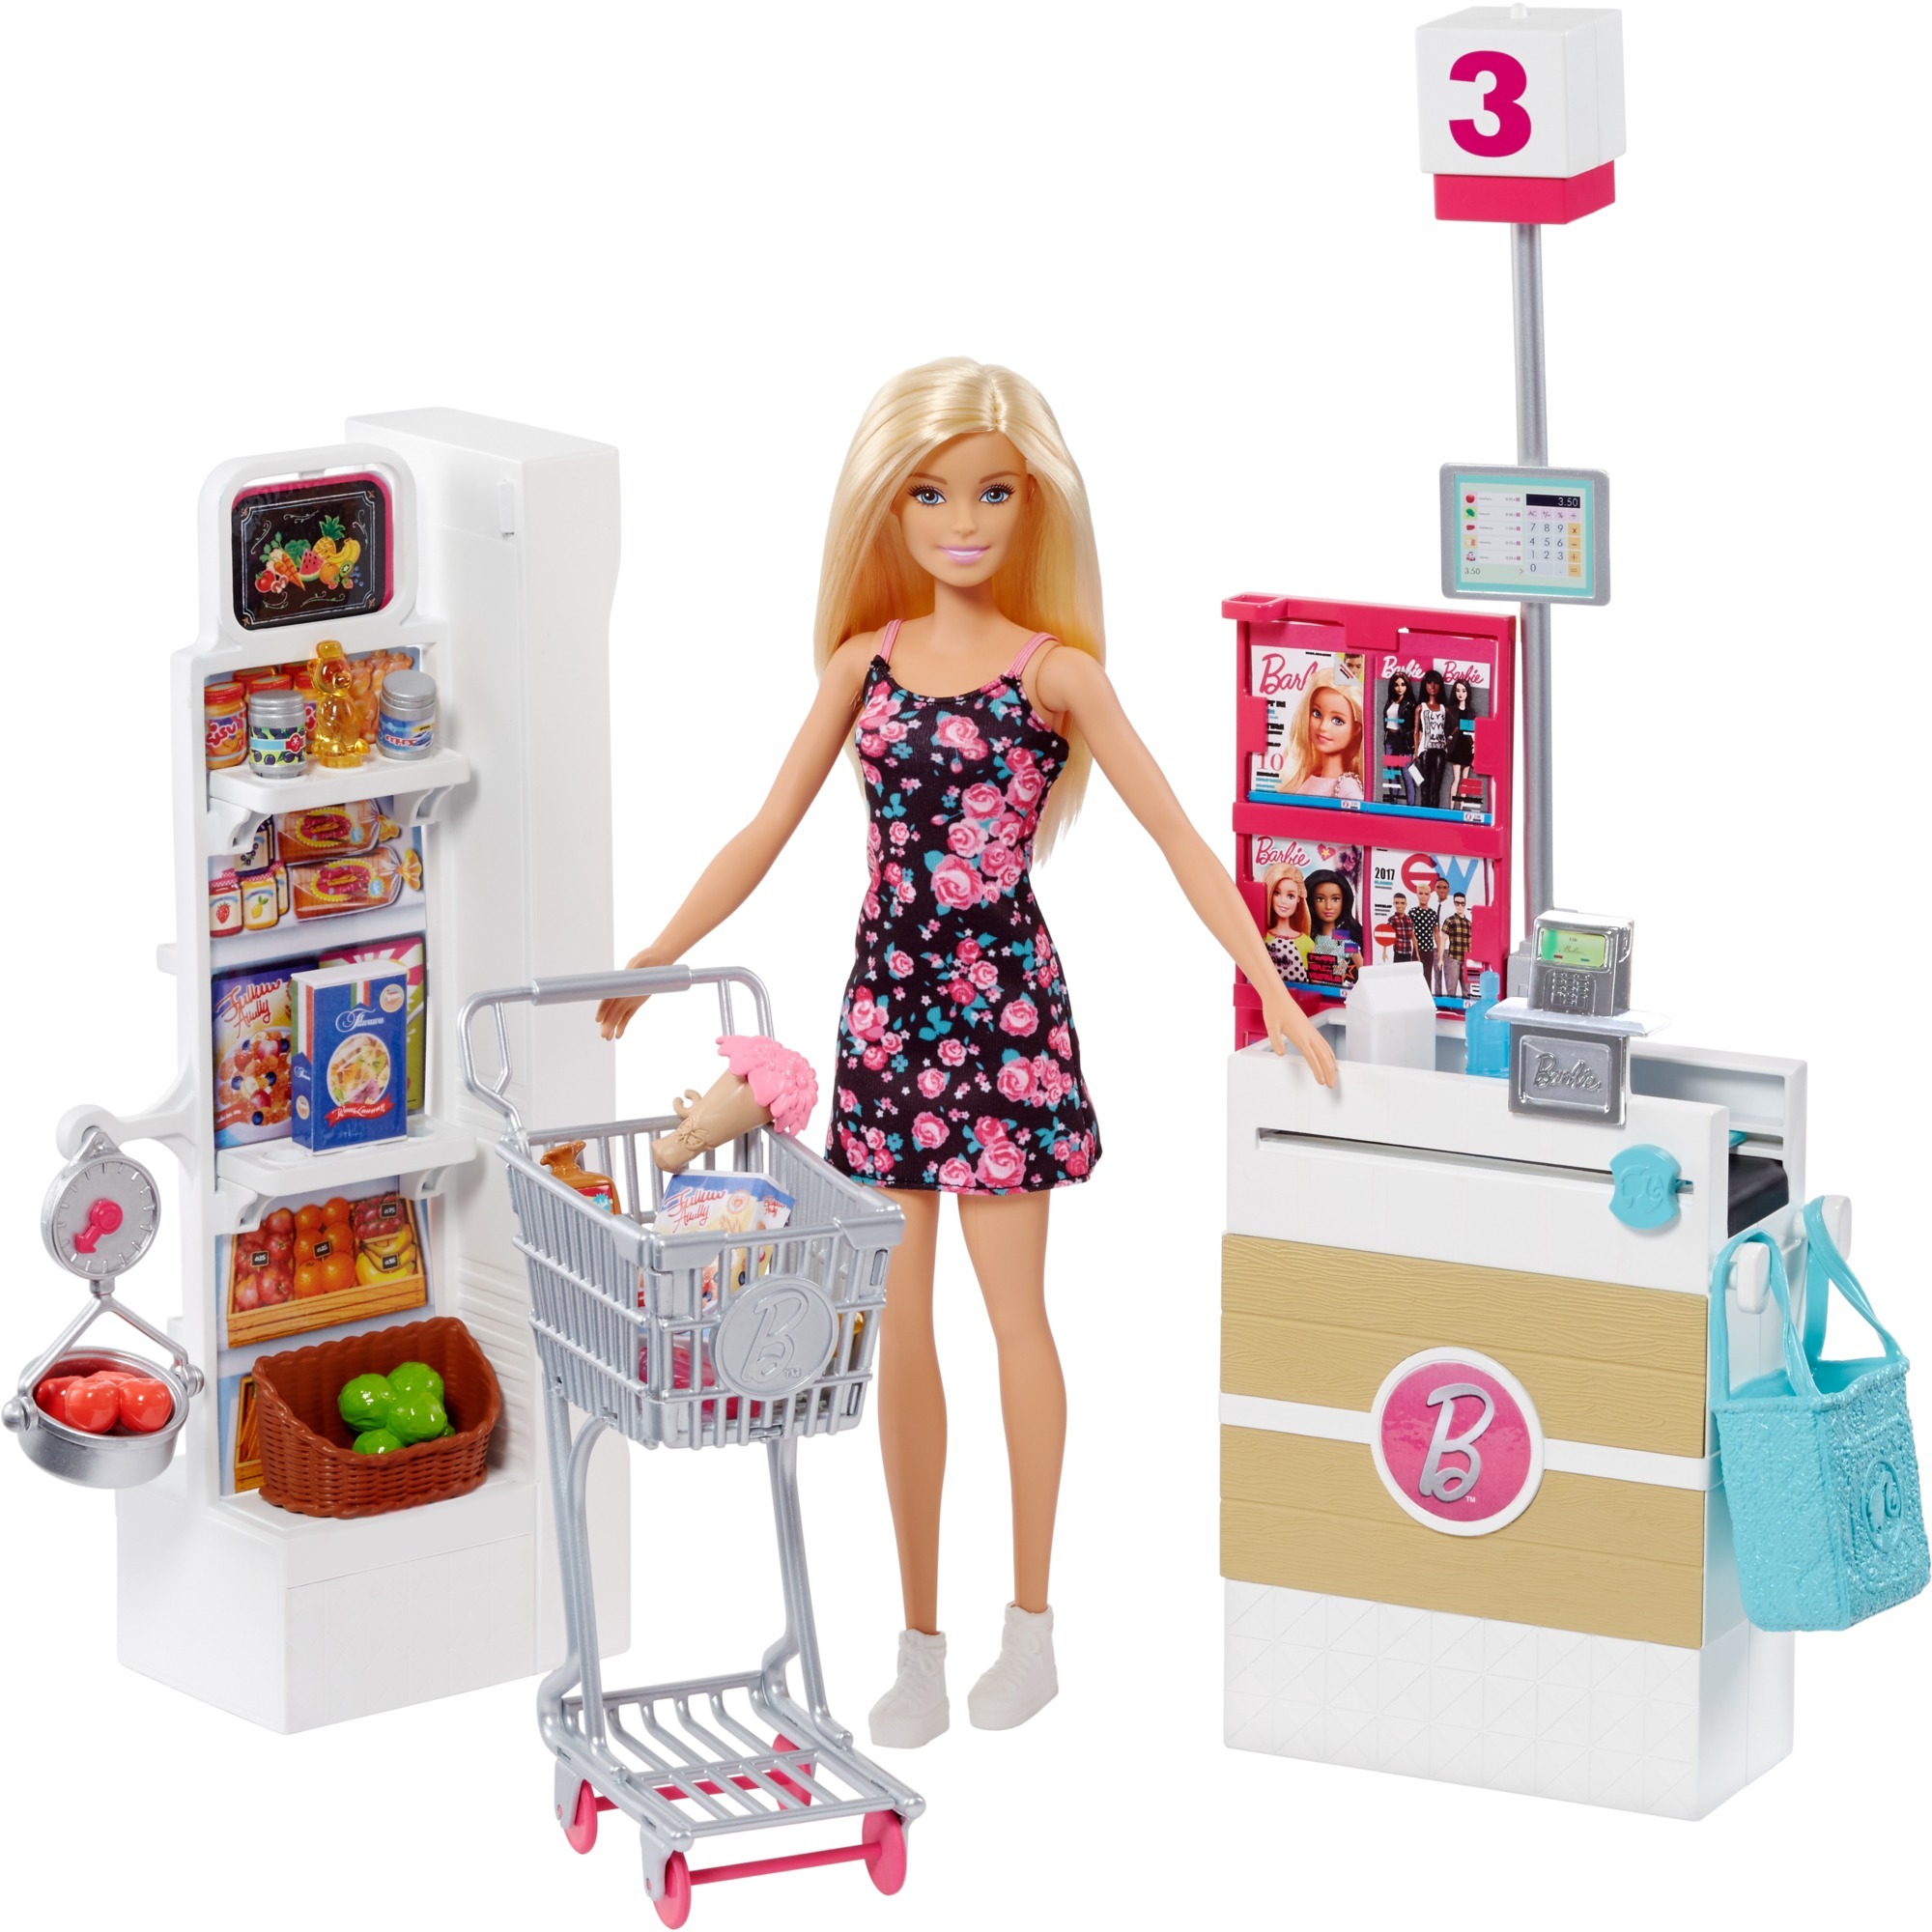 Dolls store. Mattel Barbie frp01 Барби супермаркет в ассортименте. Набор Barbie в супермаркете, 28 см, frp01. Игровой набор Mattel "Barbie новый дом мечты". Игровой набор Barbie frp01.